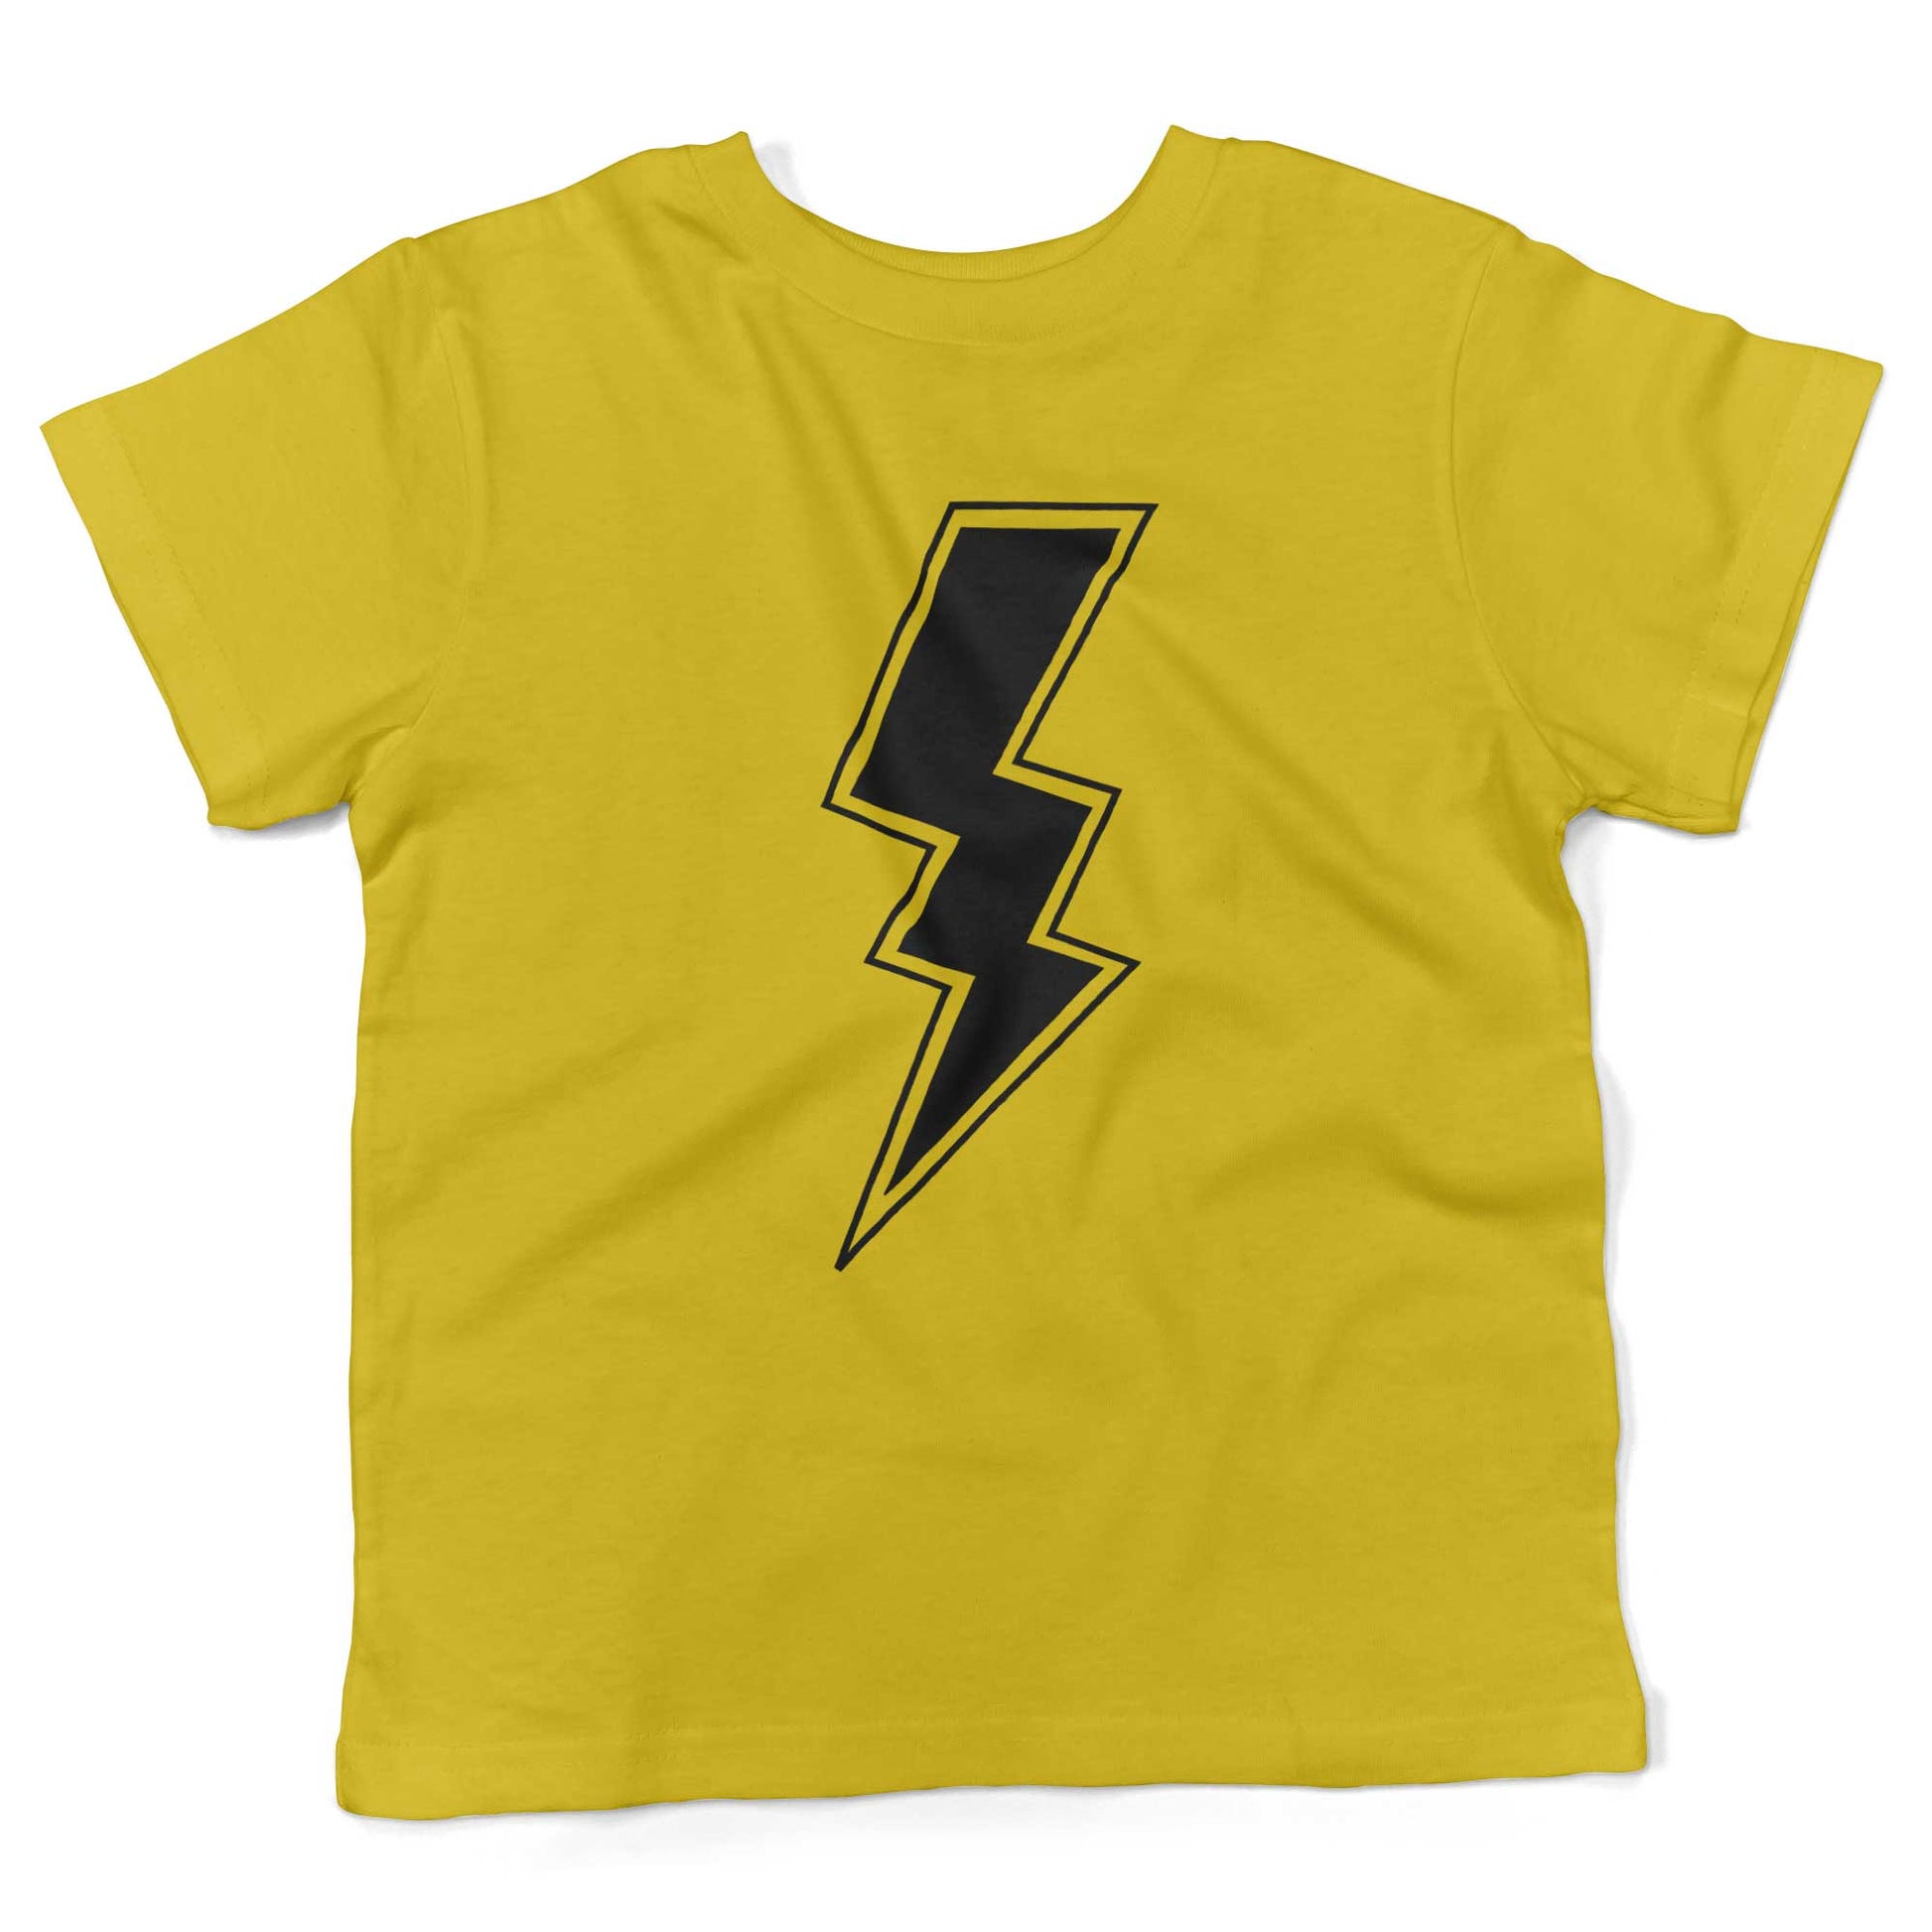 Giant Lightning Bolt Toddler Shirt-Sunshine Yellow-2T